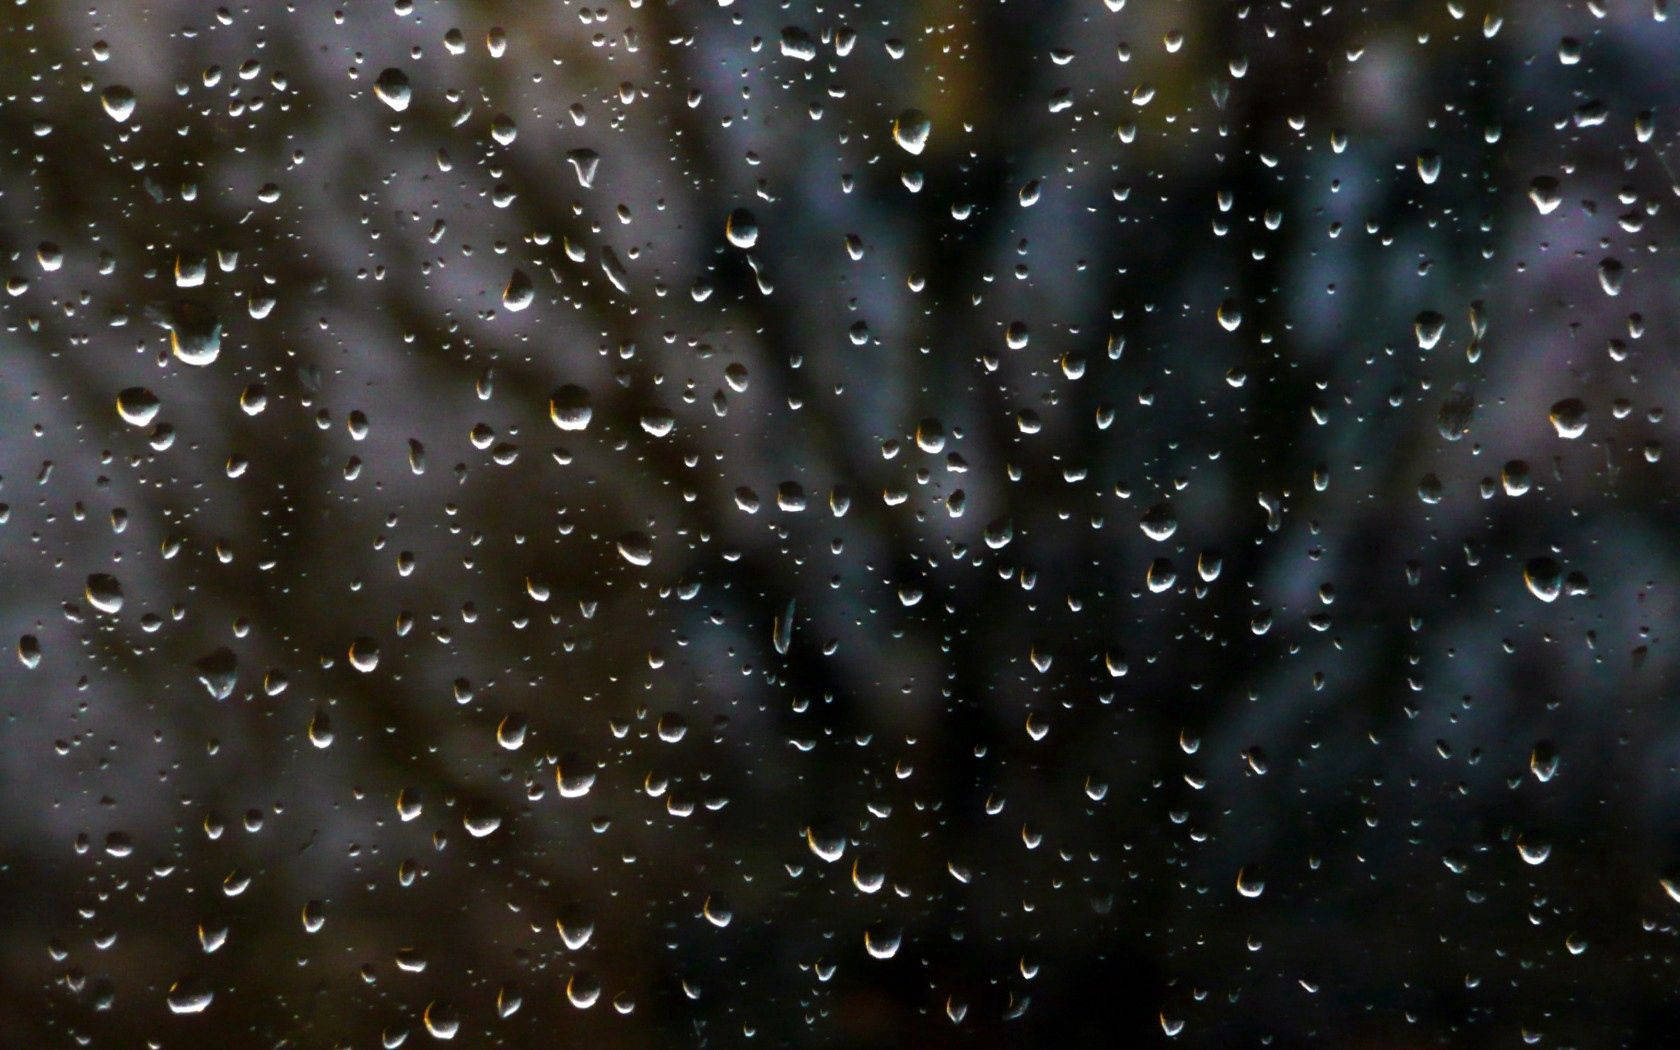 Rain Drops On A Window